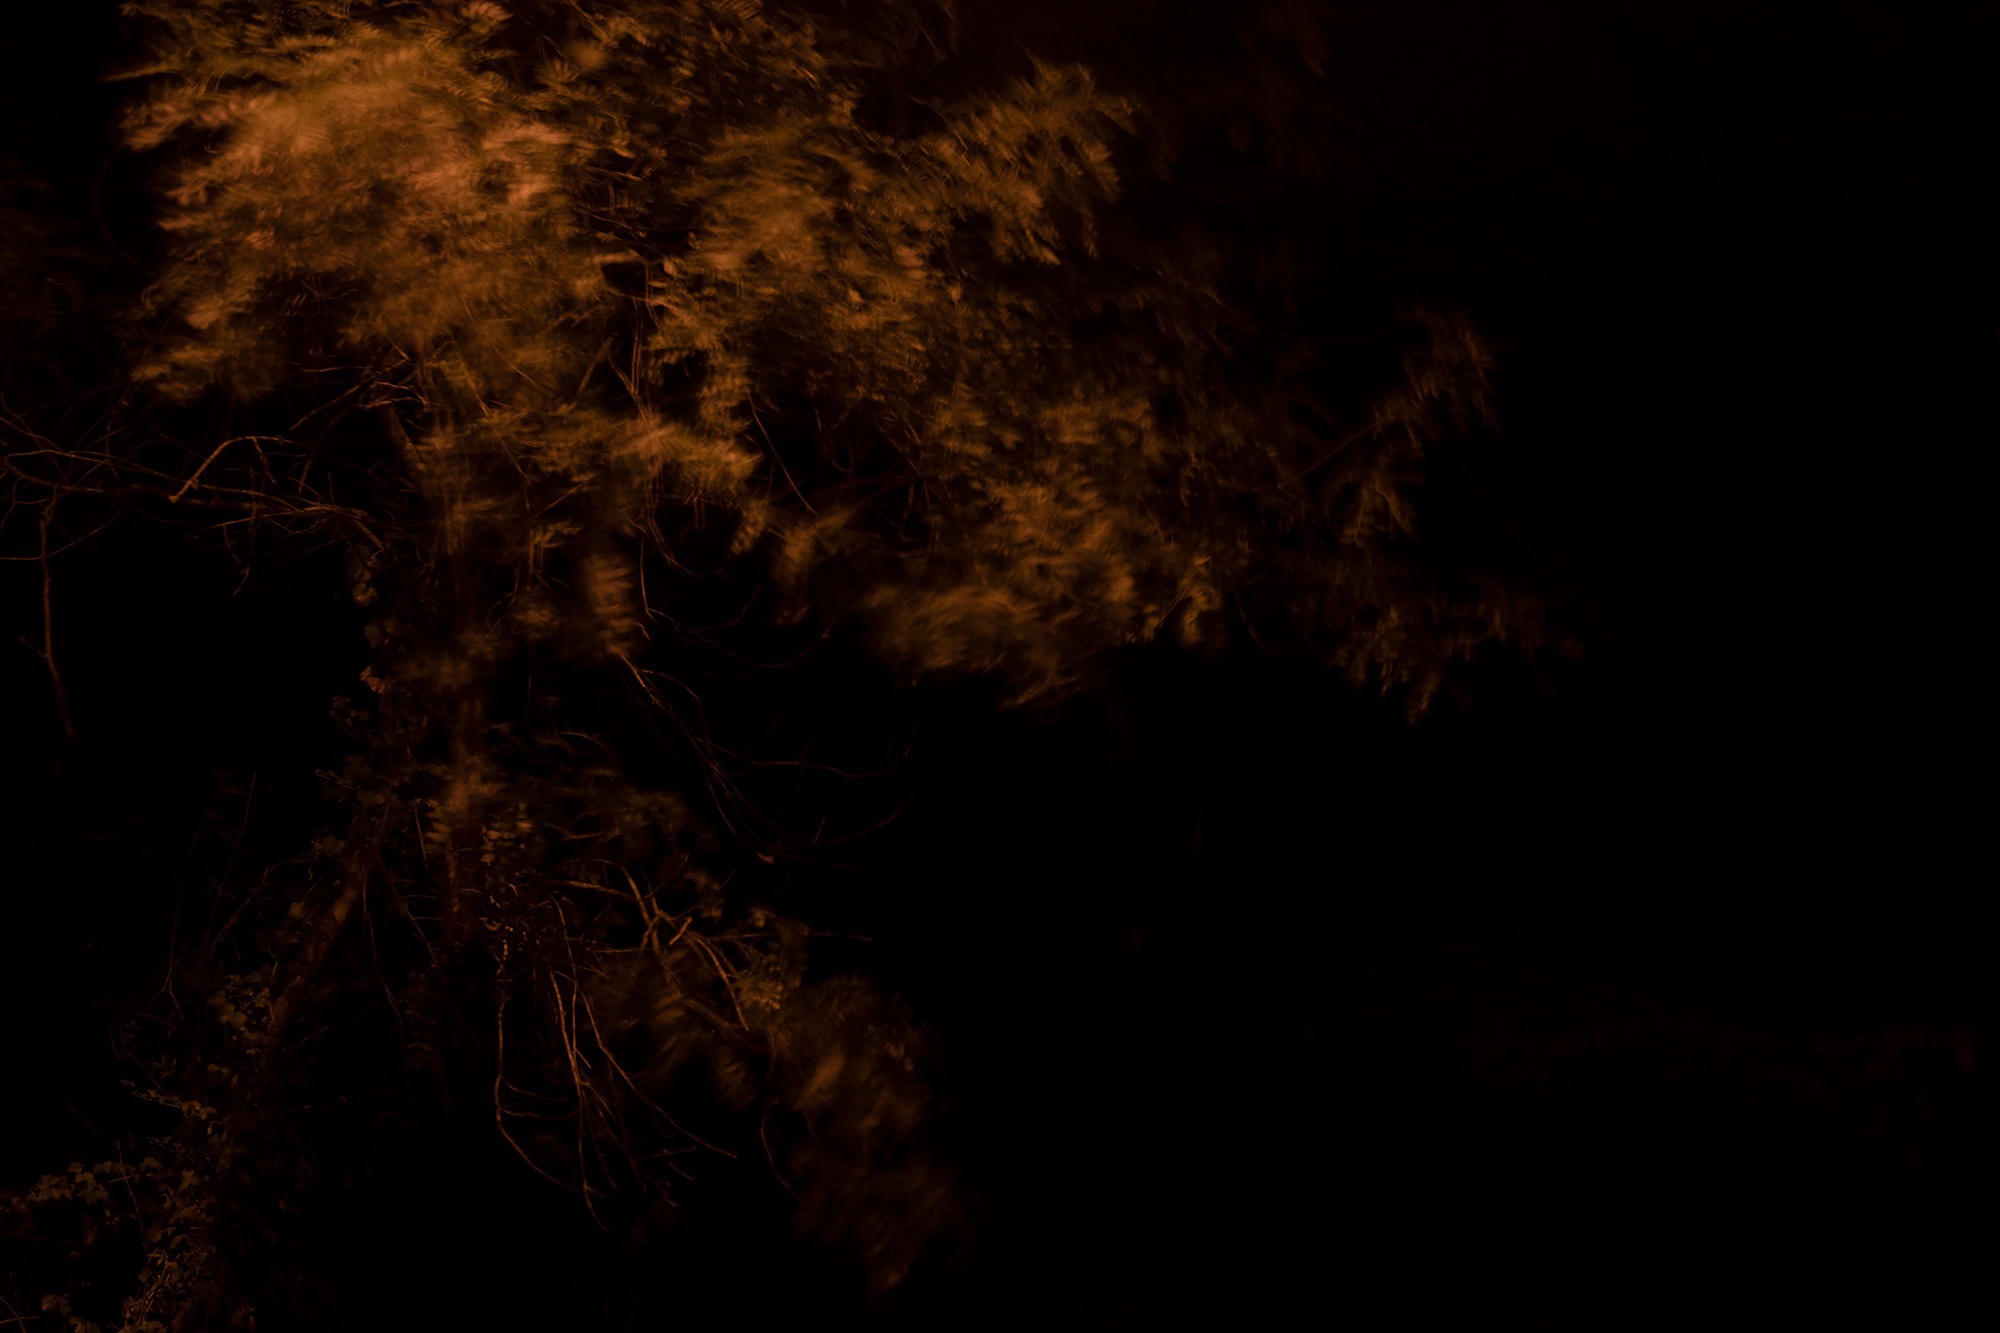 Carina Martins - Physis - tree at night